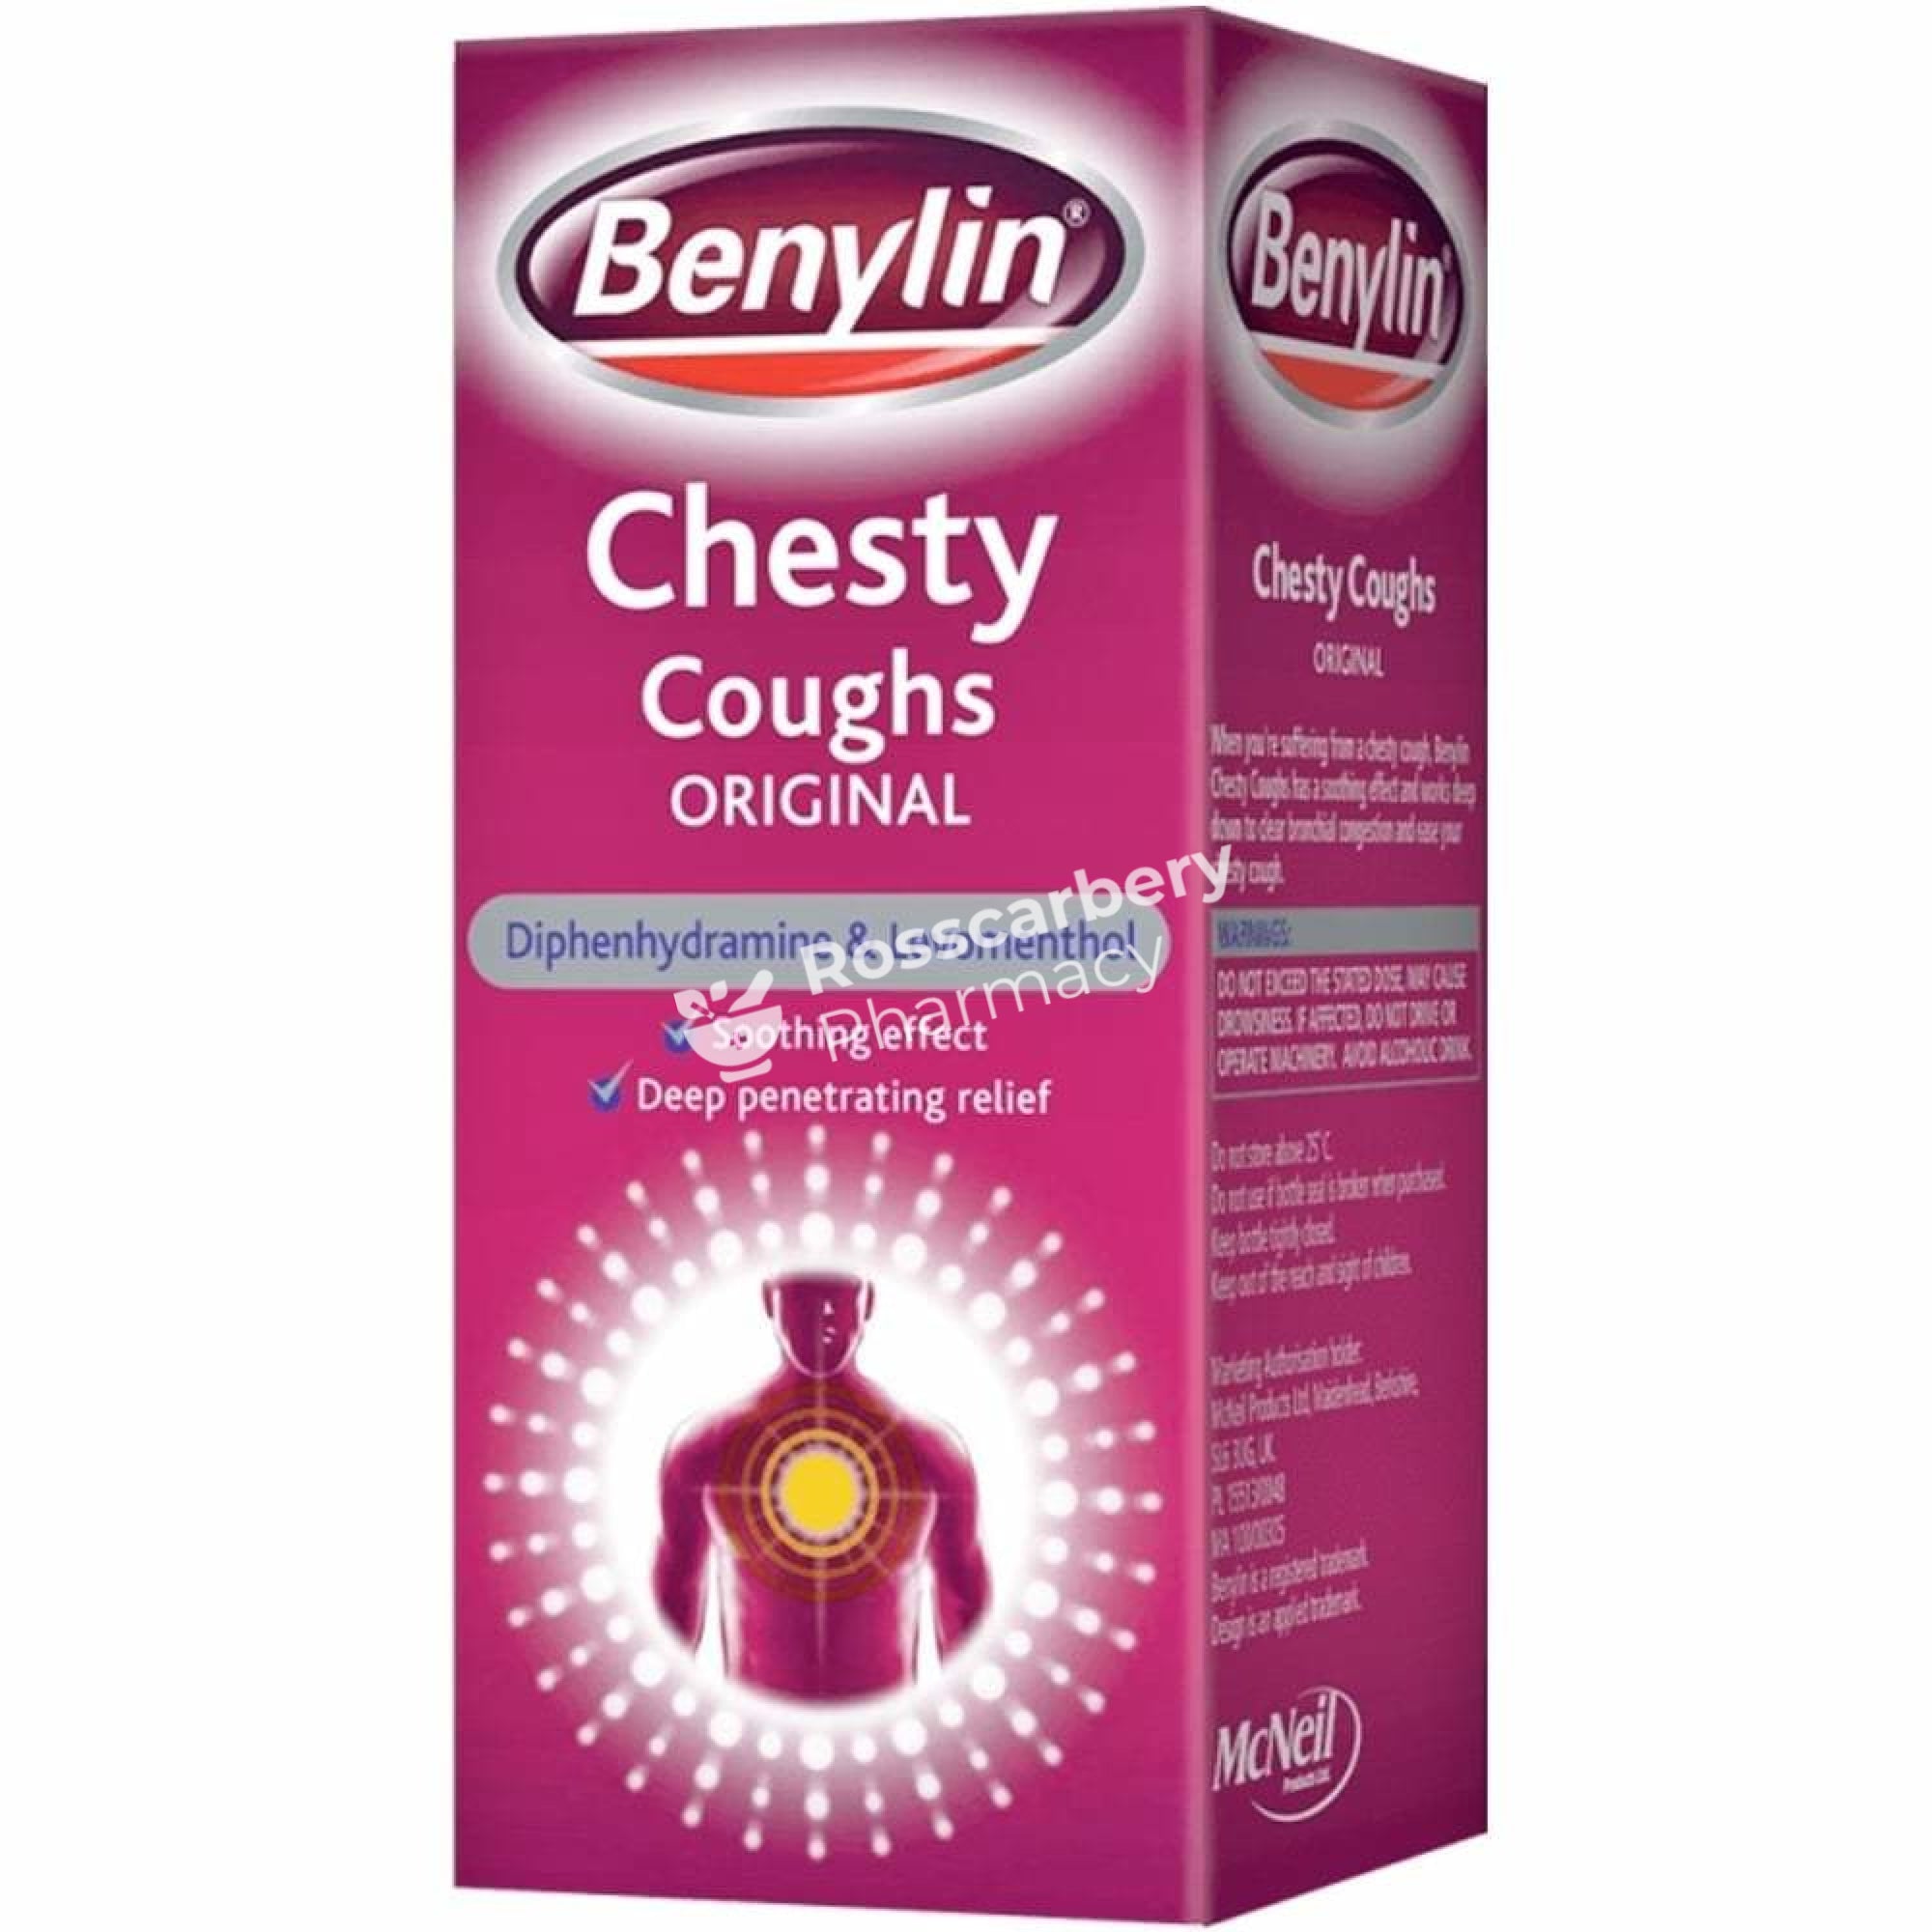 Benylin Cough Medicine Syrup - Original Formula Bottles